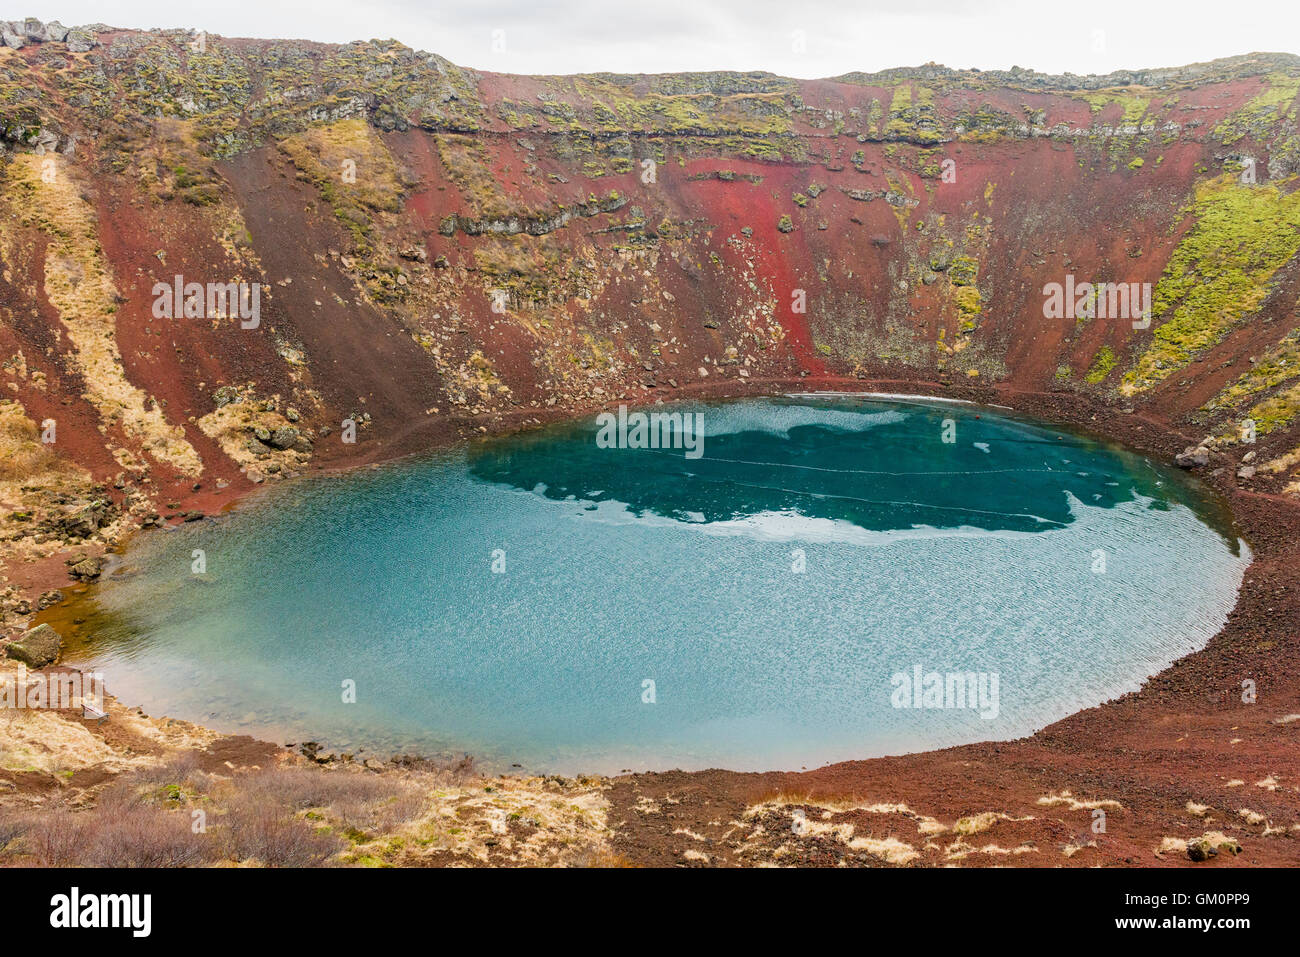 Kerið vulkanische Krater-See in Grimsnes, Island entstand vor etwa 6500 Jahren und liegt in der westlichen Volcanic Zone. Stockfoto